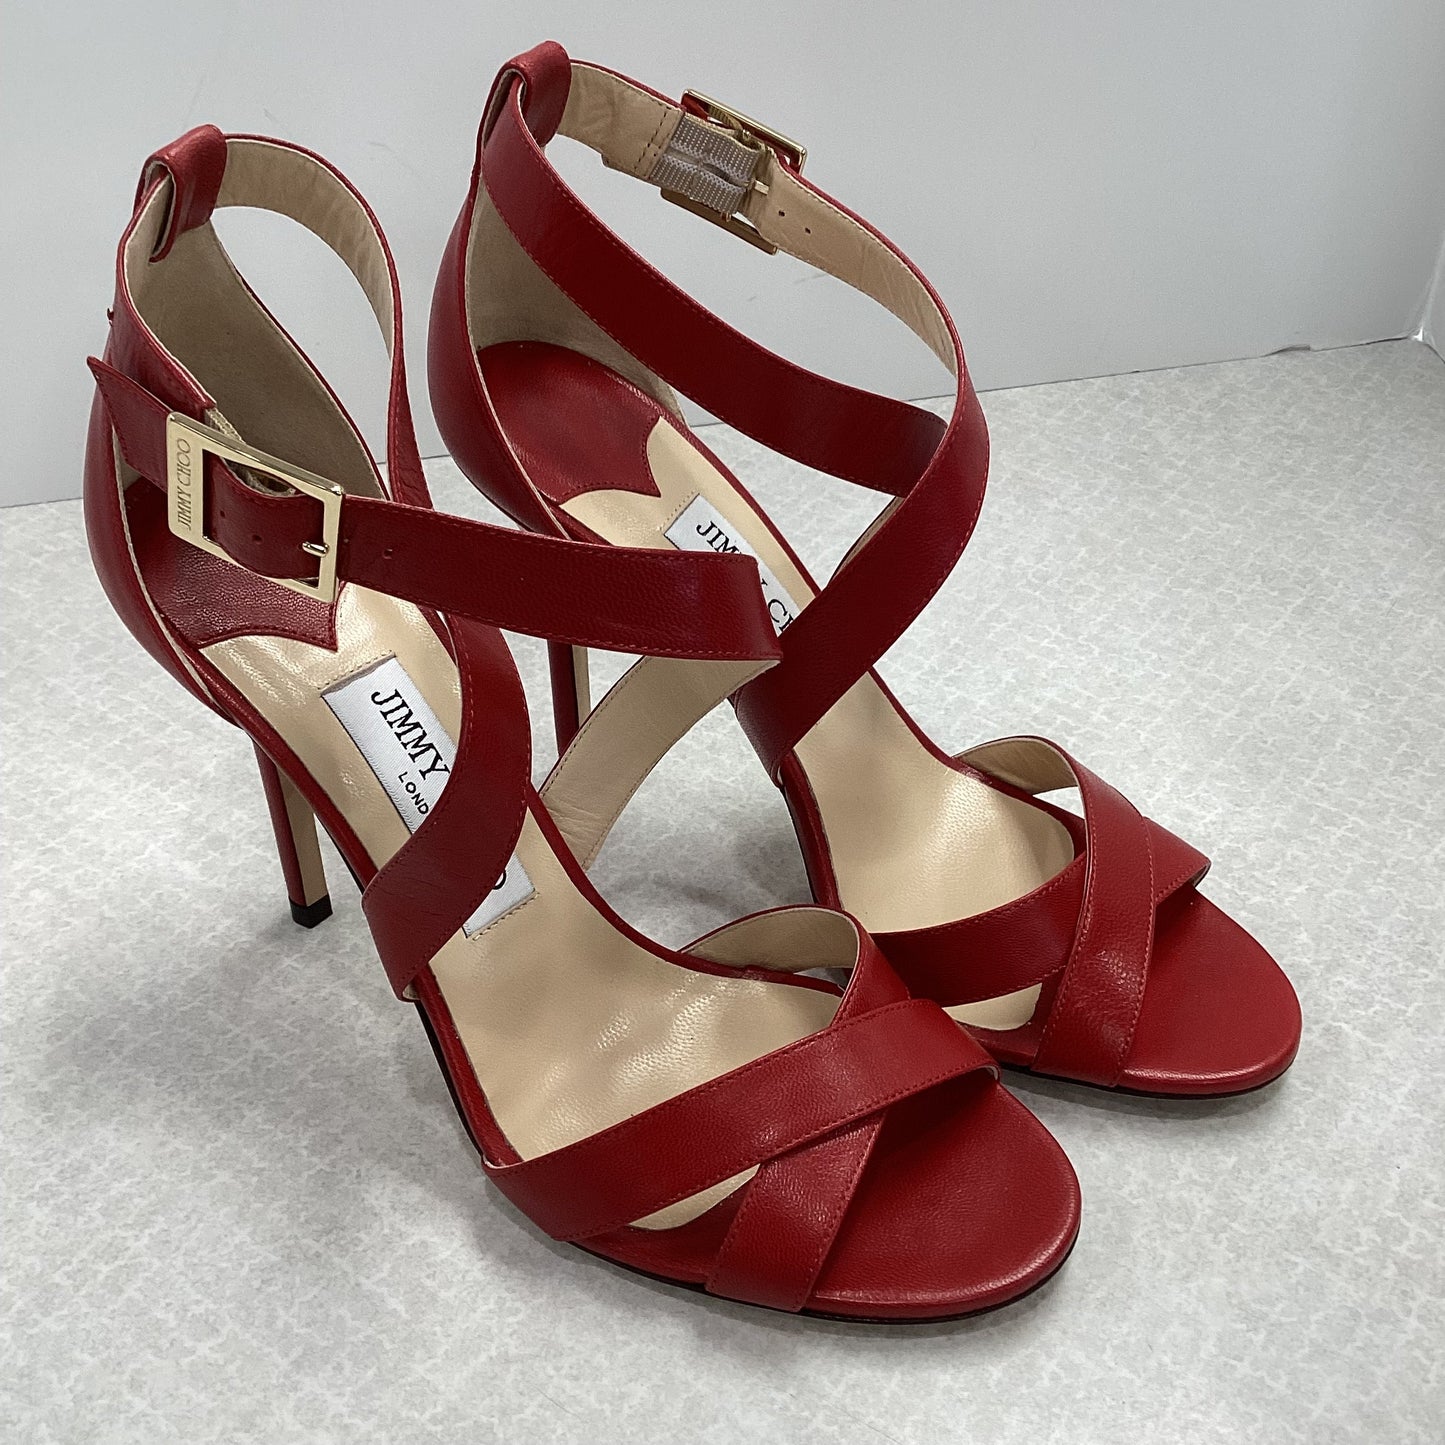 Red Sandals Designer Jimmy Choo, Size 8